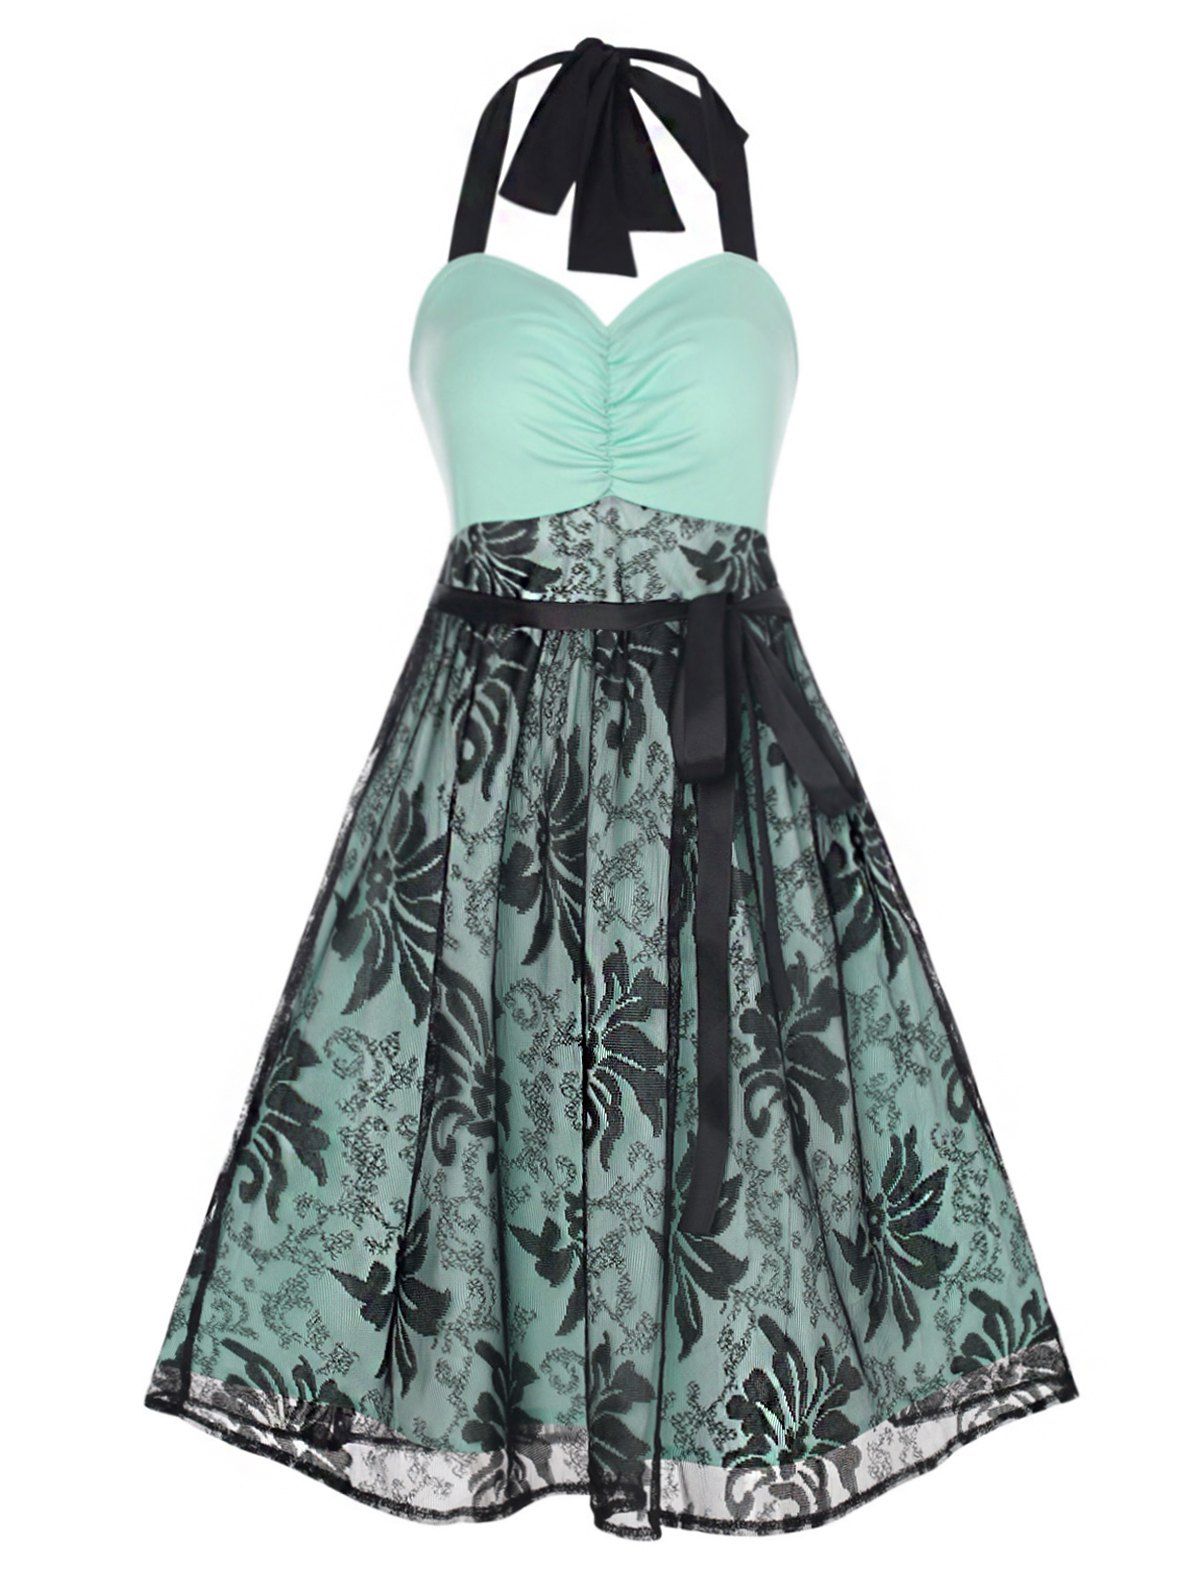 Floral Lace Overlay A Line Knee Length Dress Ruched Empire Waist Halter Summer Dress - LIGHT GREEN XL